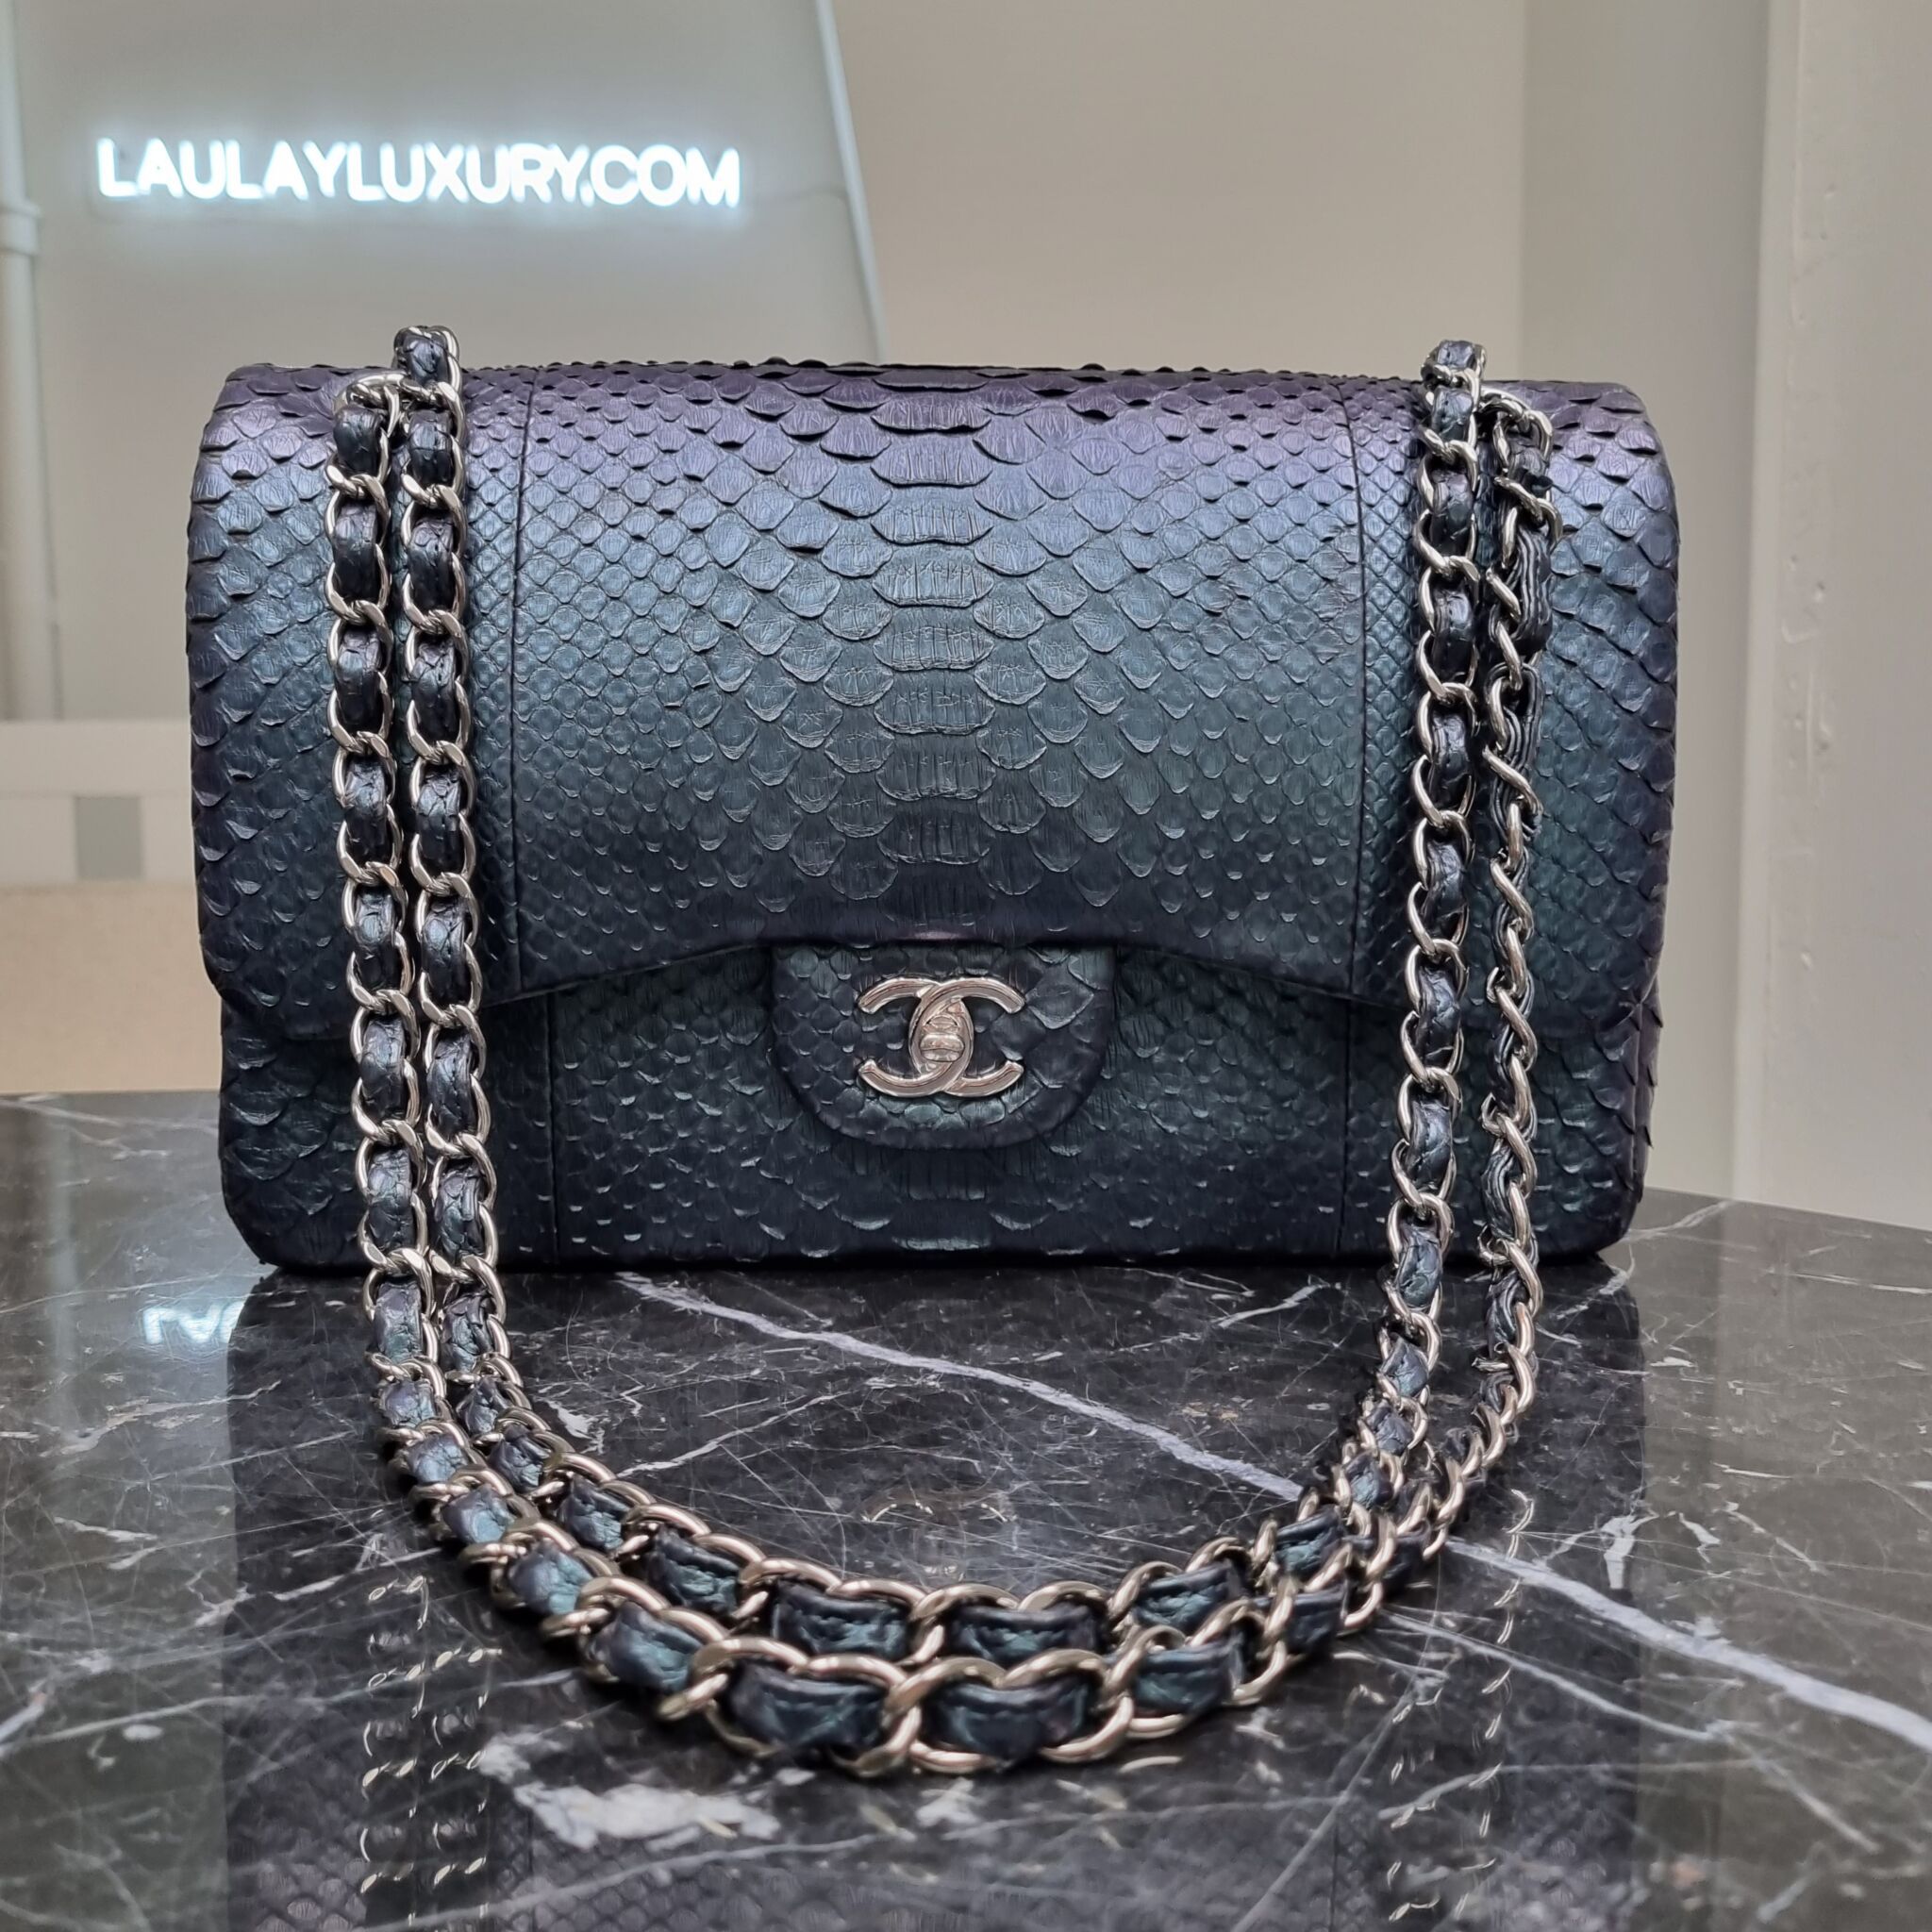 Chanel Jumbo Double Flap, Python, Metallic Blue - Laulay Luxury